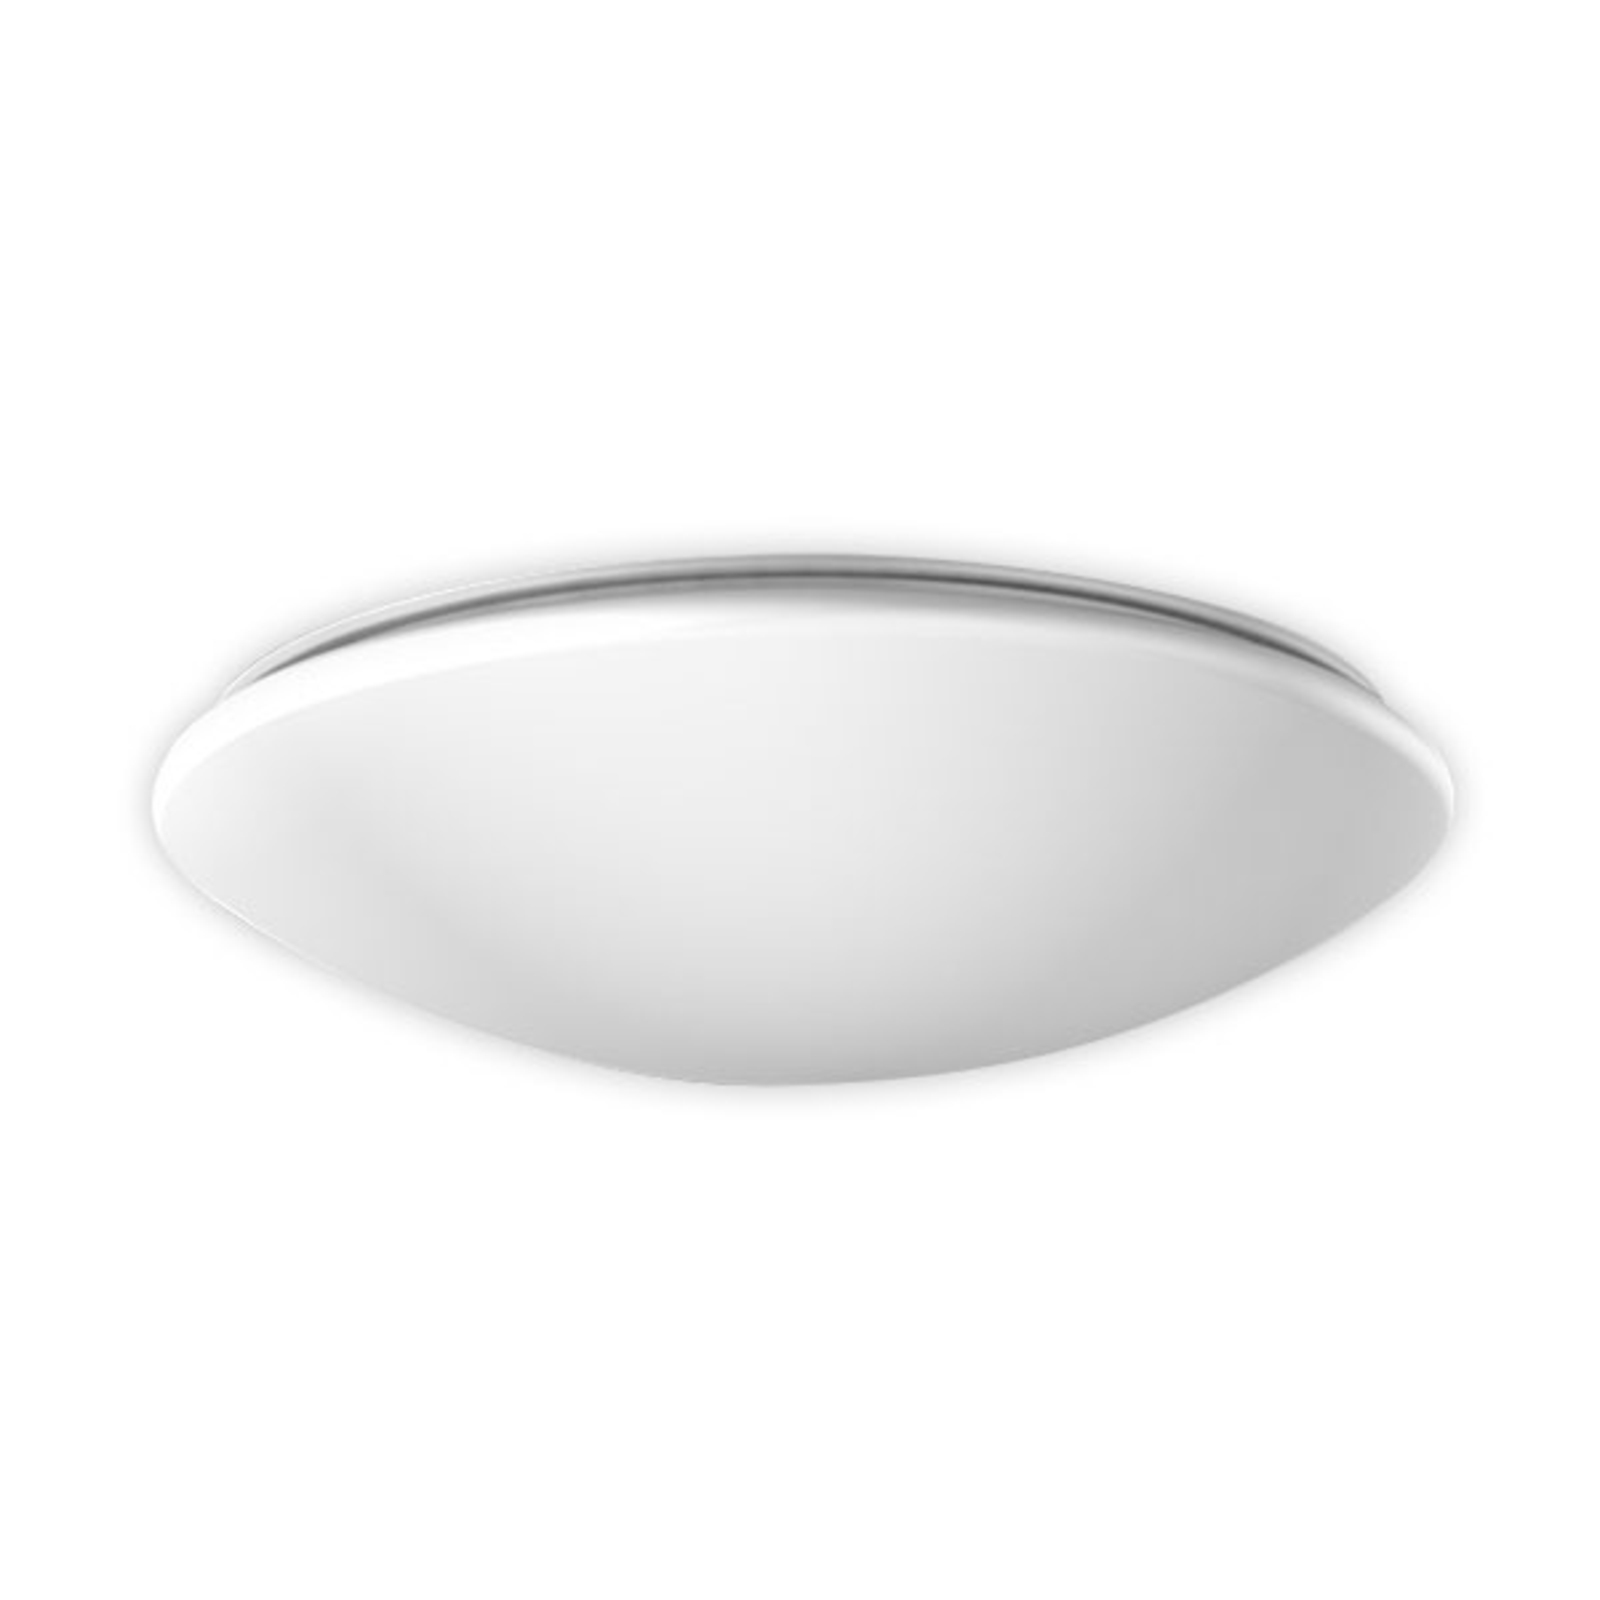 RZB Flat Polymero ceiling light DALI 31W 46cm 840